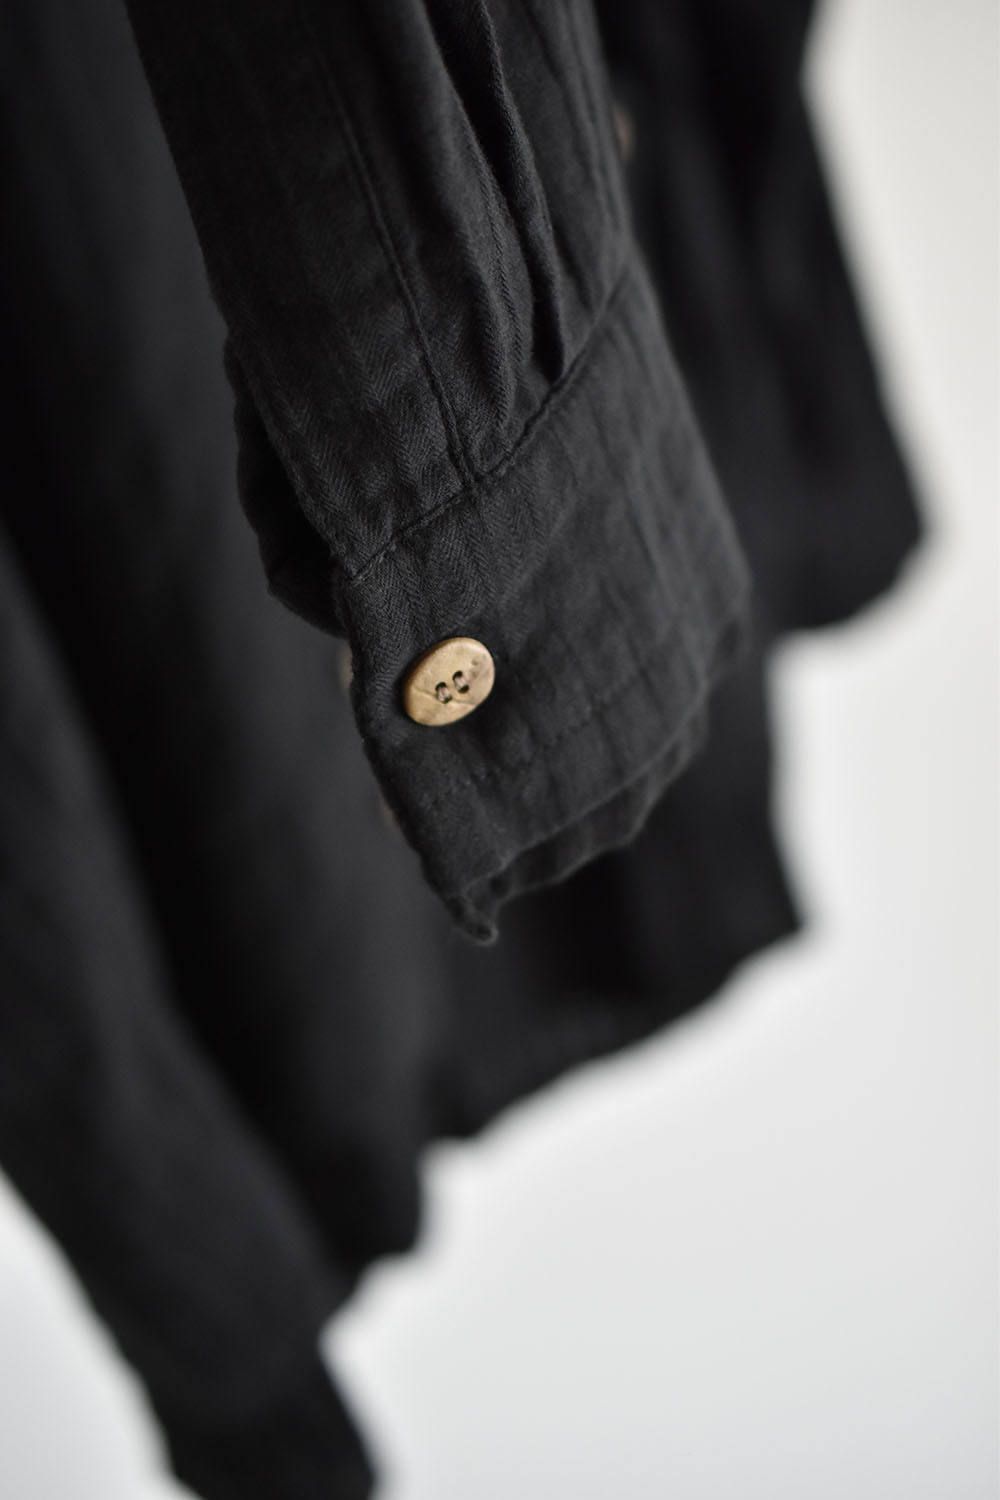 Layered Shirts "Black" /レイヤードシャツ"ブラック"